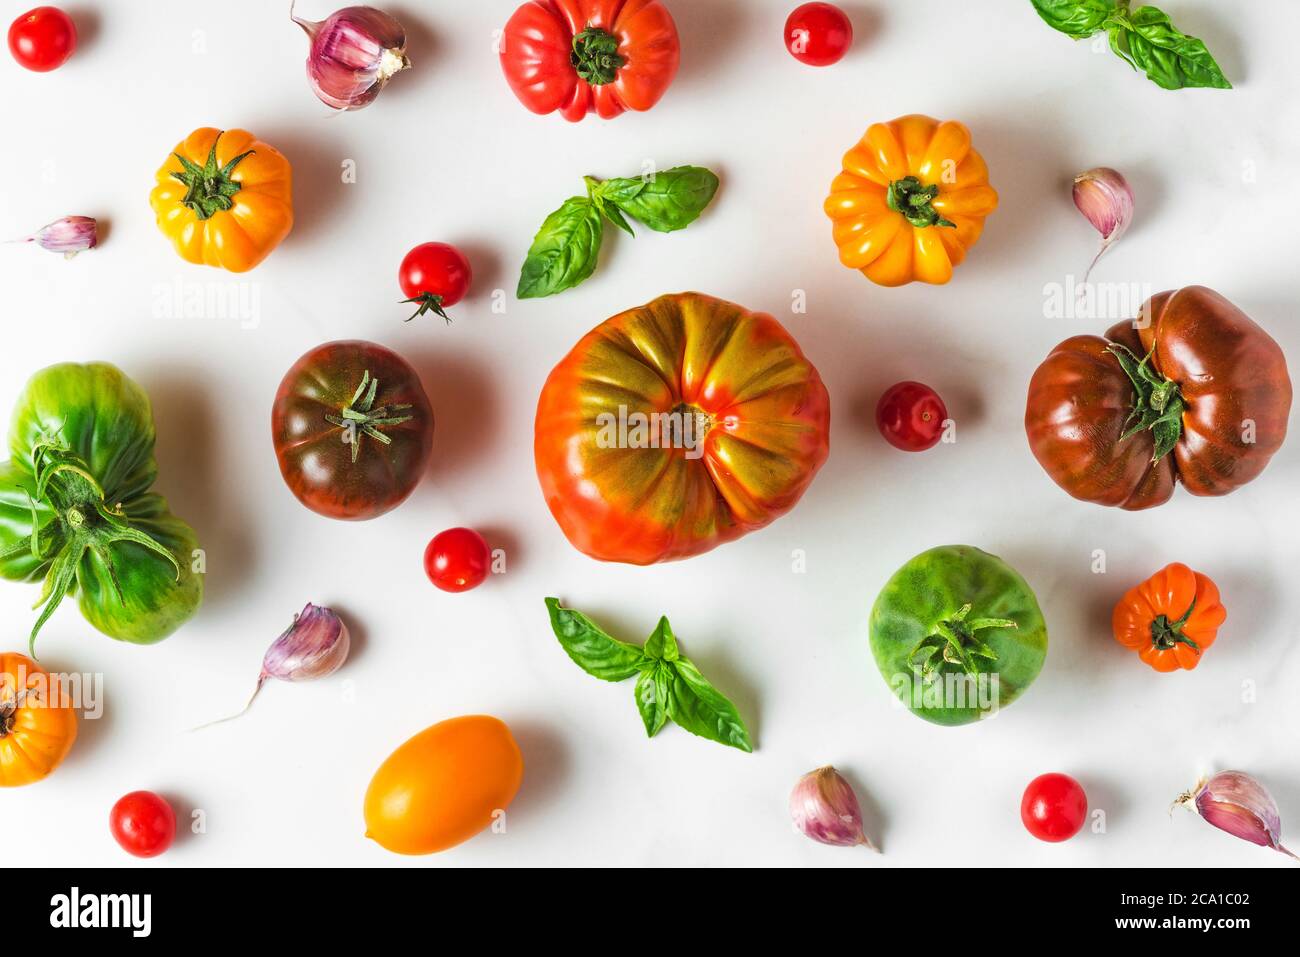 composition des aliments. différentes tomates biologiques colorées, légumes au poivre, ail et basilic sur fond blanc. vue du dessus. plat Banque D'Images